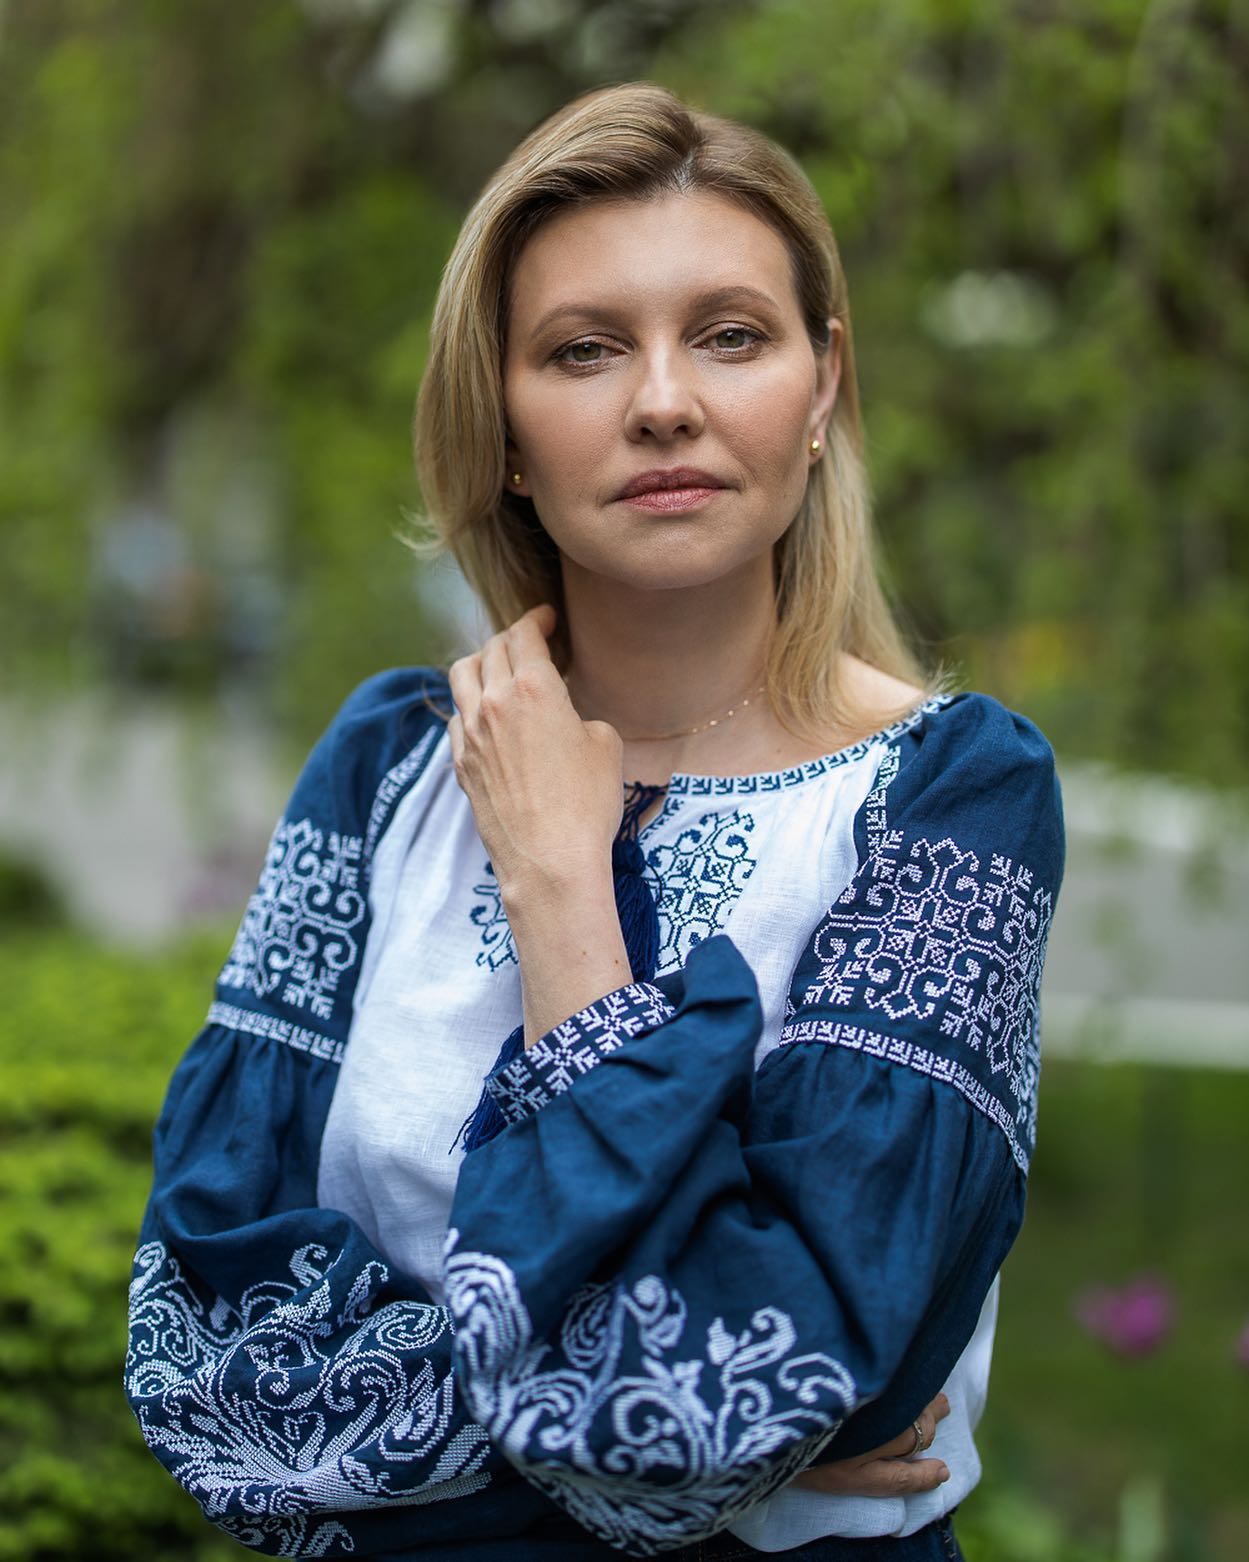 Чиста та безневинна краса: Олена Зеленська зачарувала новим фото у синій вишиванці